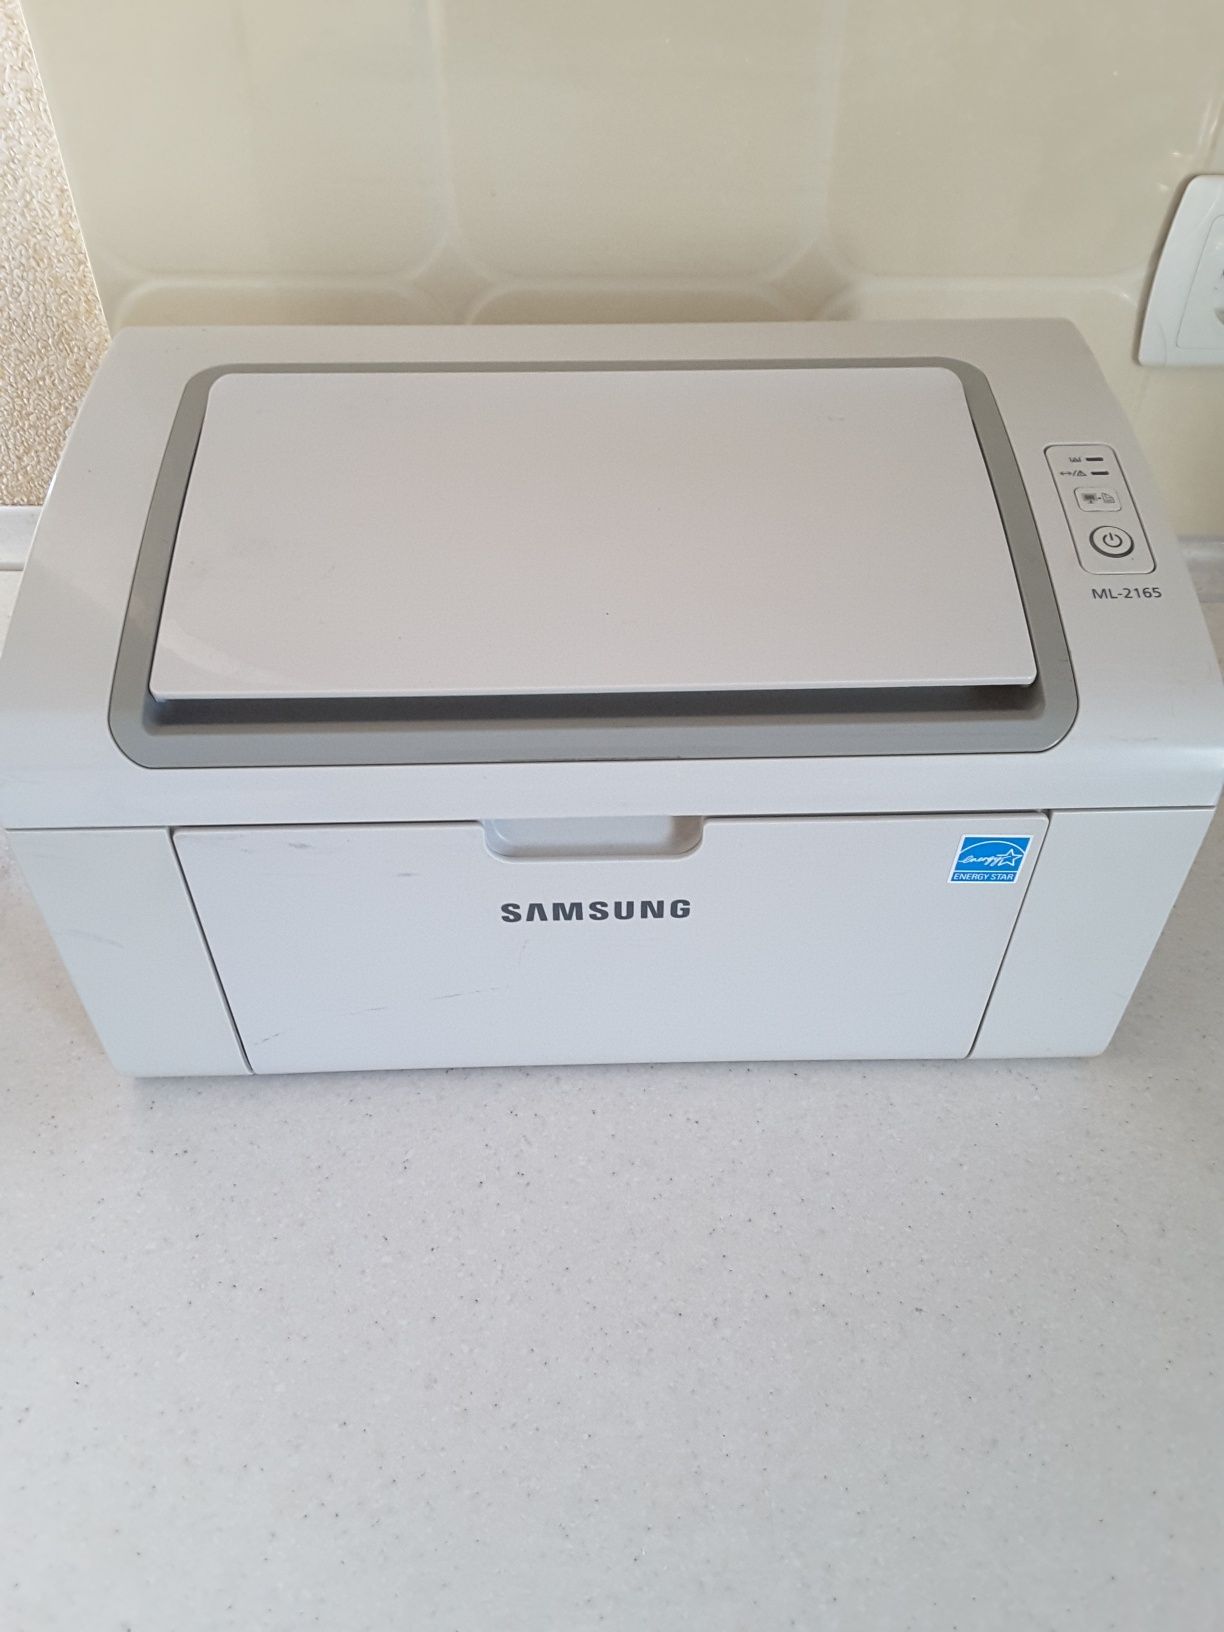 Принтер Б/У Samsung ML-2165, Лазерная печать.